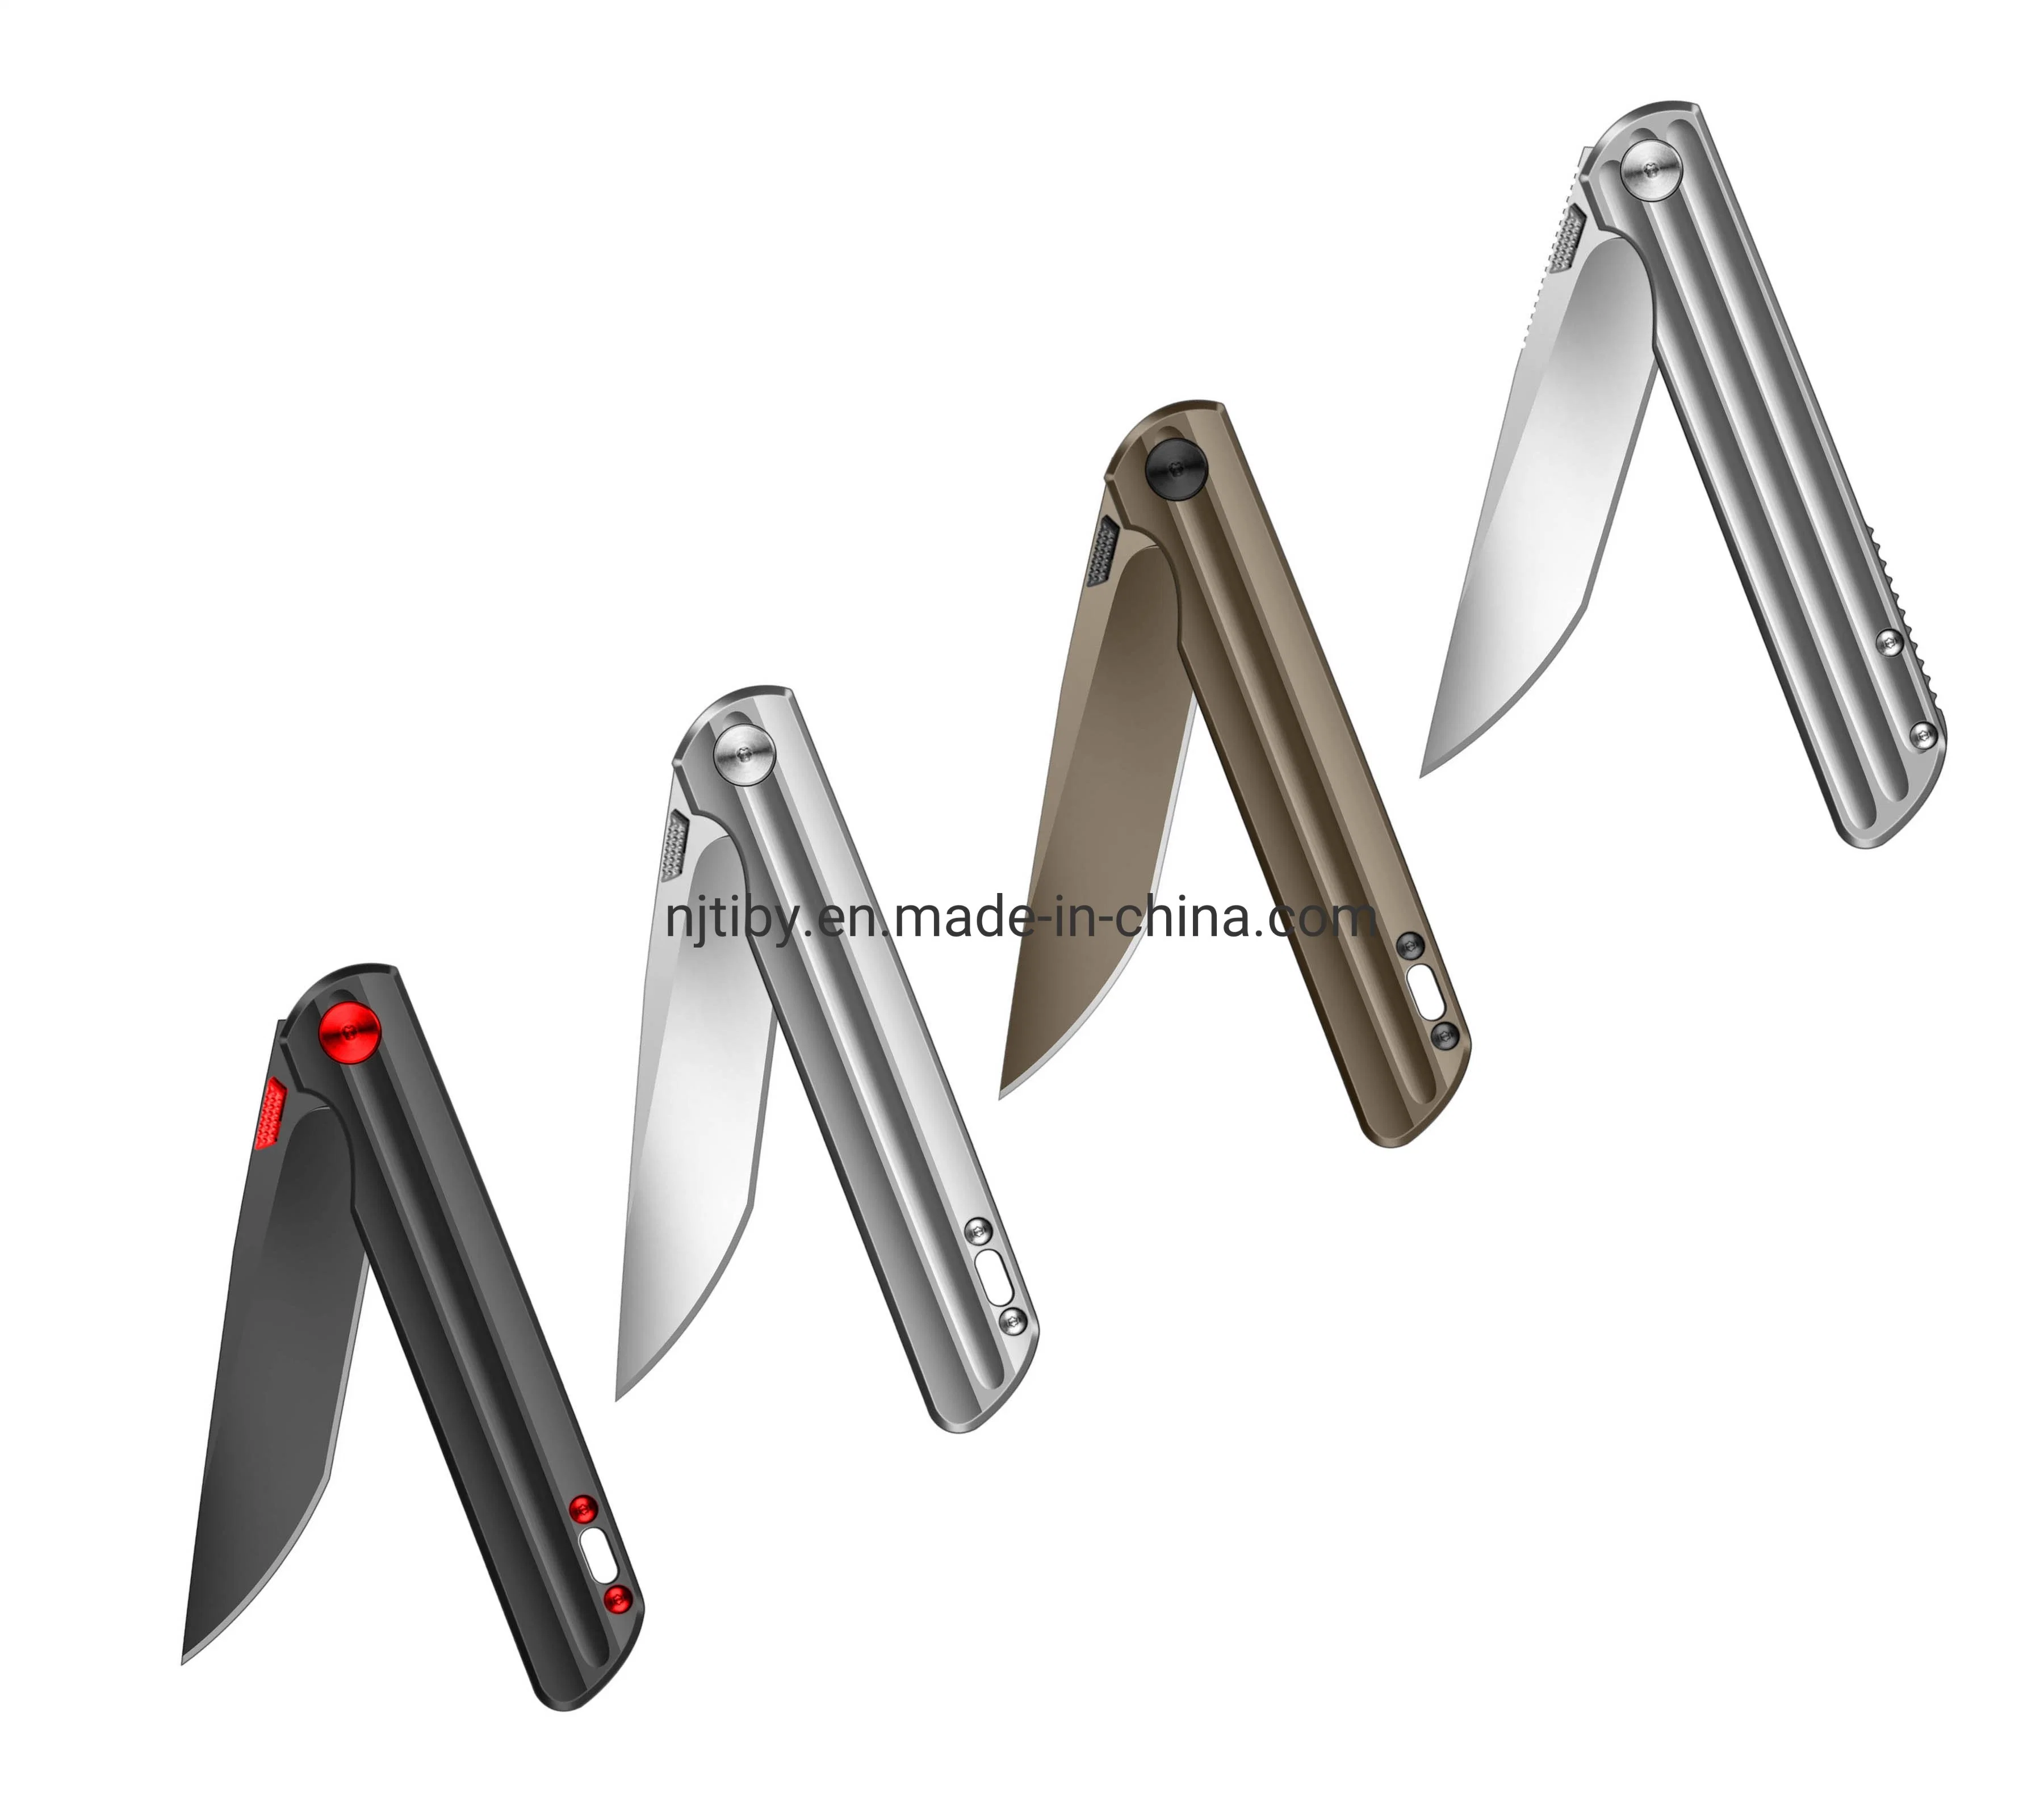 Hot Selling Folding Pocket Knife Survival Knife